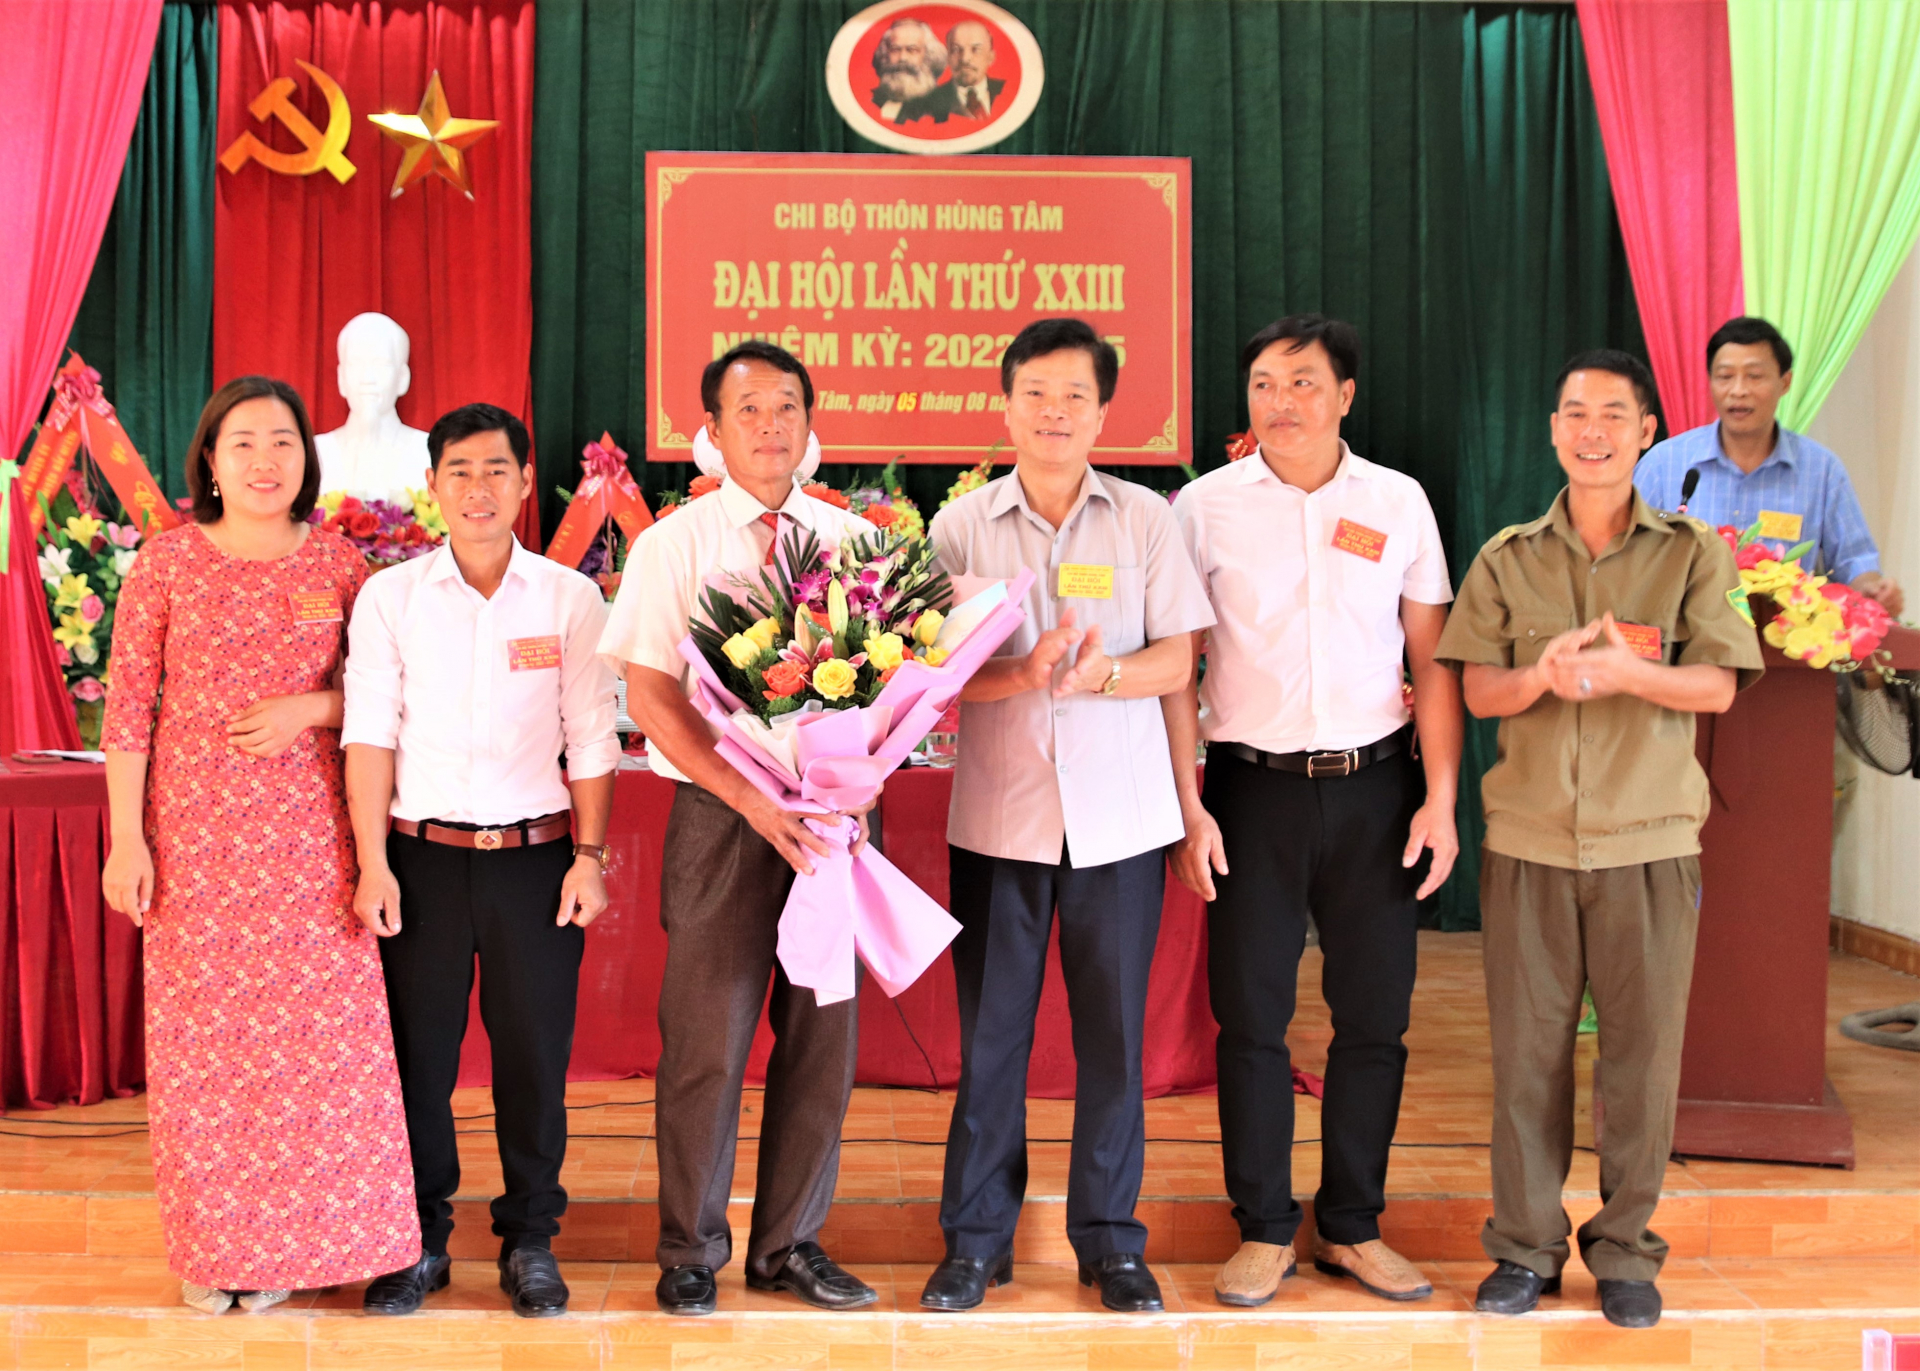 Chủ nhiệm Ủy ban Kiểm tra Tỉnh ủy Trần Quang Minh tặng hoa và quà chúc mừng Chi ủy Chi bộ thôn Hùng Tâm khóa mới.